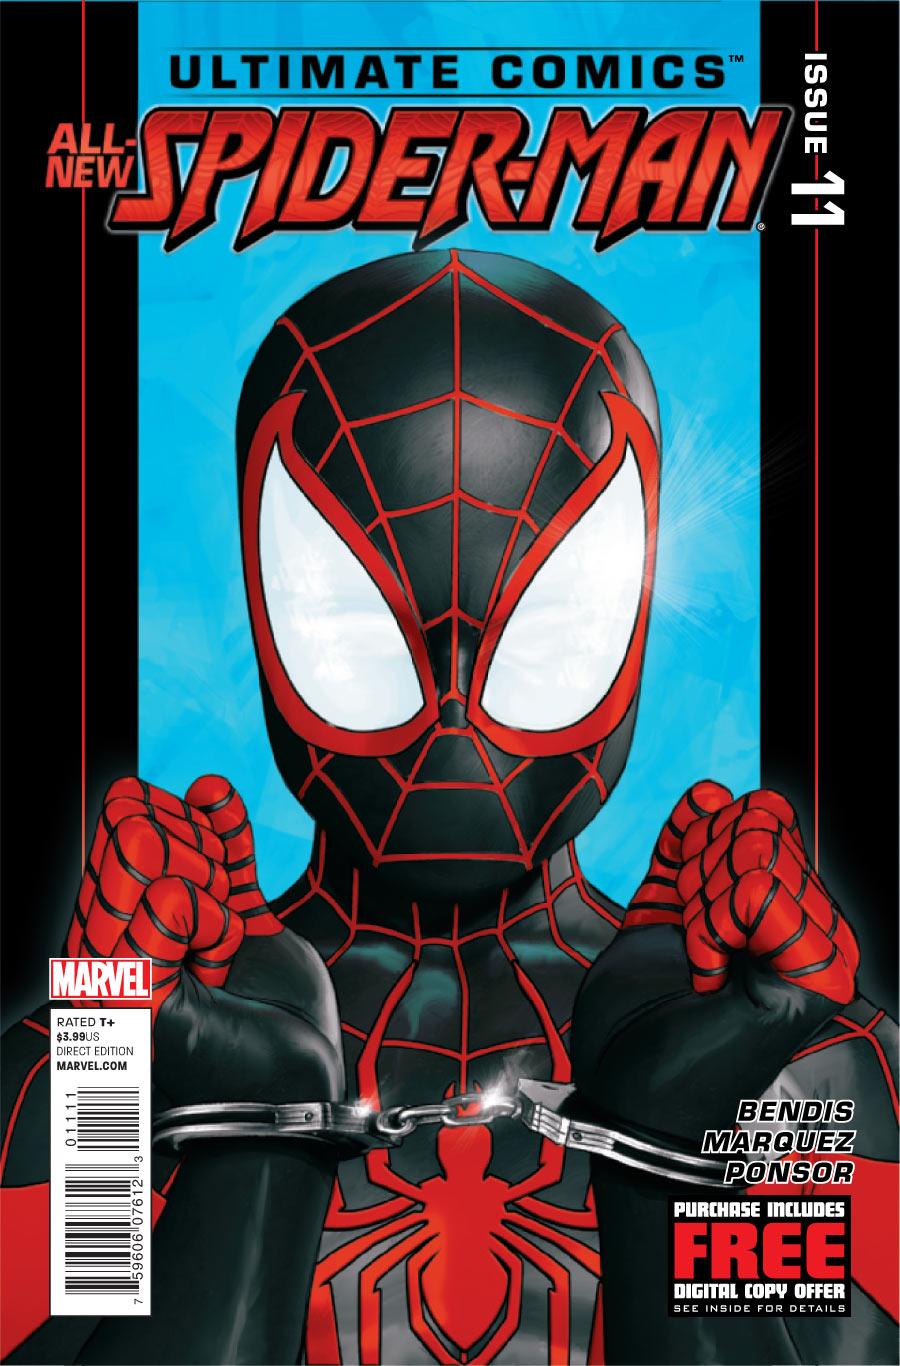 Ultimate Comics Spider-Man Vol. 2 #11